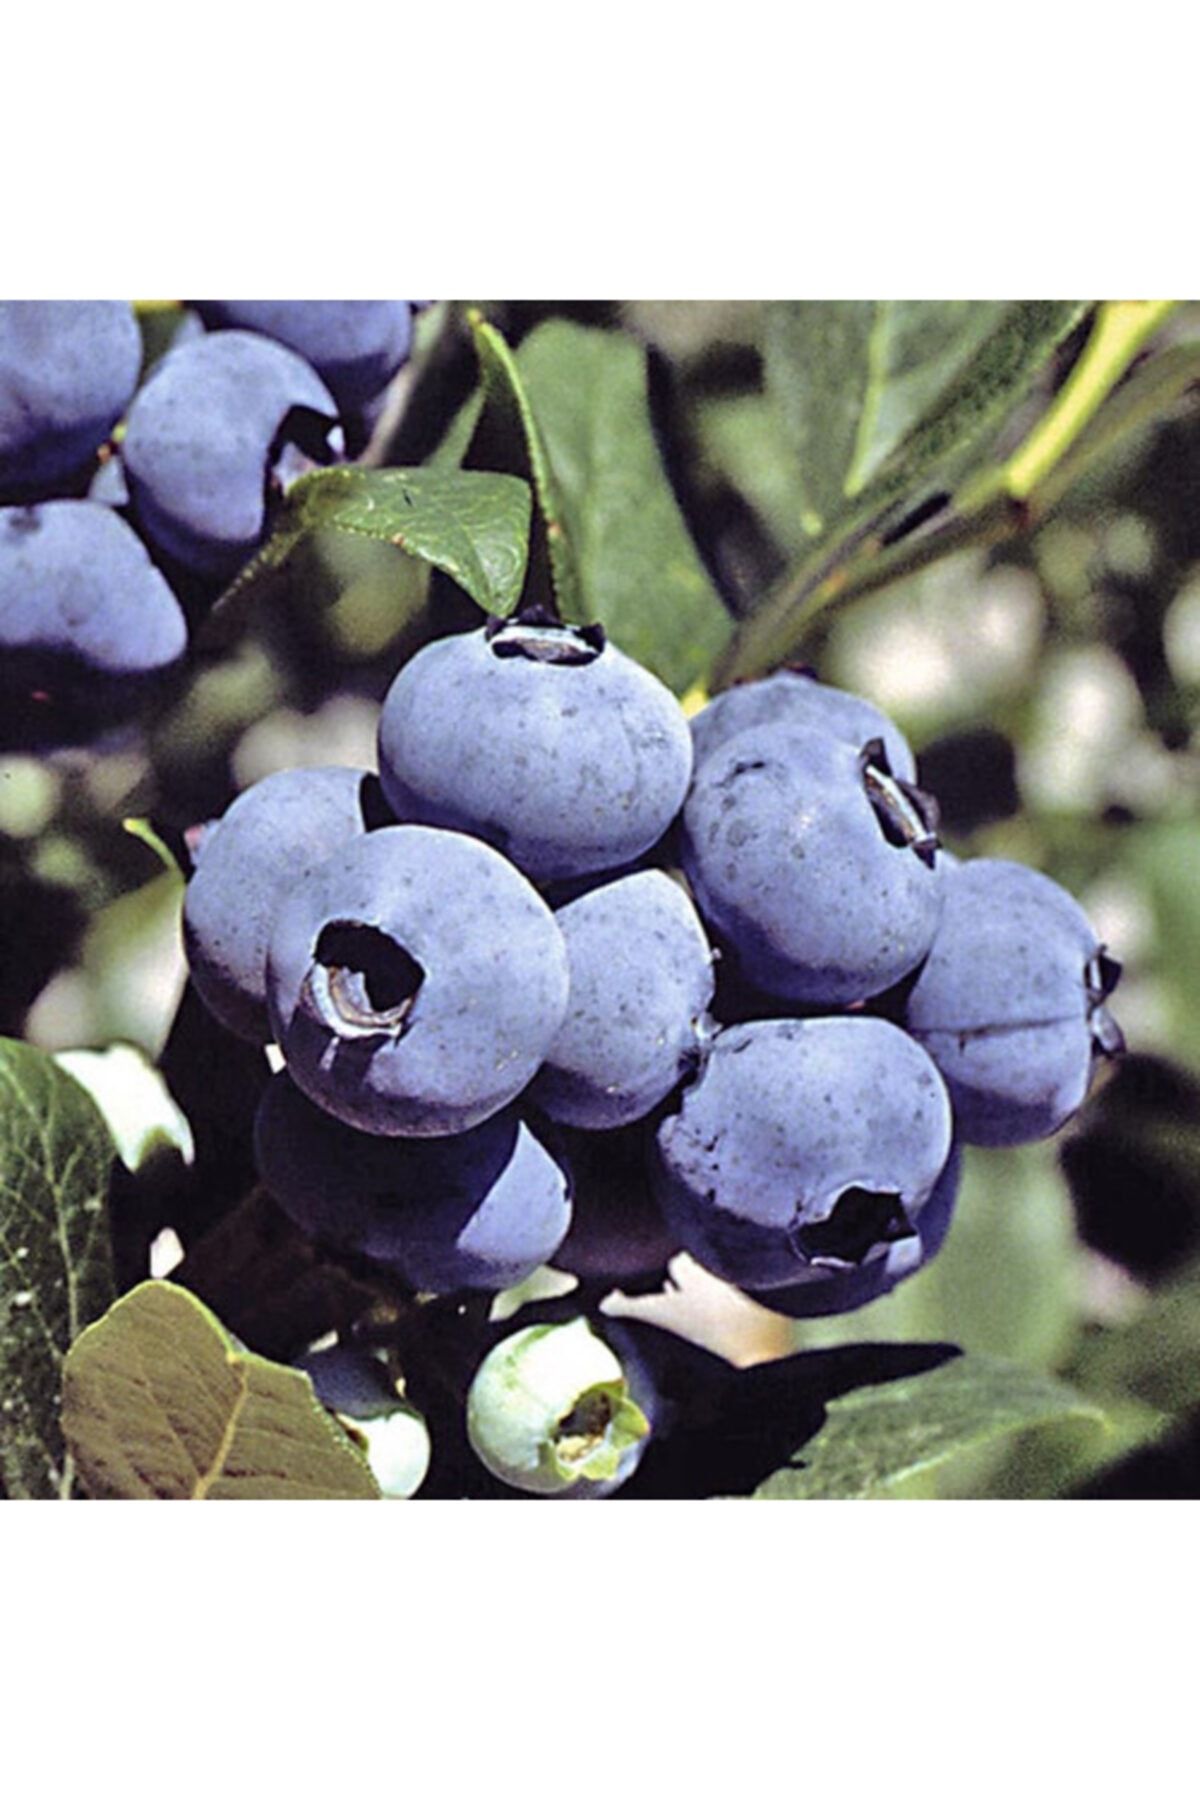 BURSATARIM Chanticleer Yaban Mersini Fidanı Saksılı ( Maviyemiş ) Blueberry